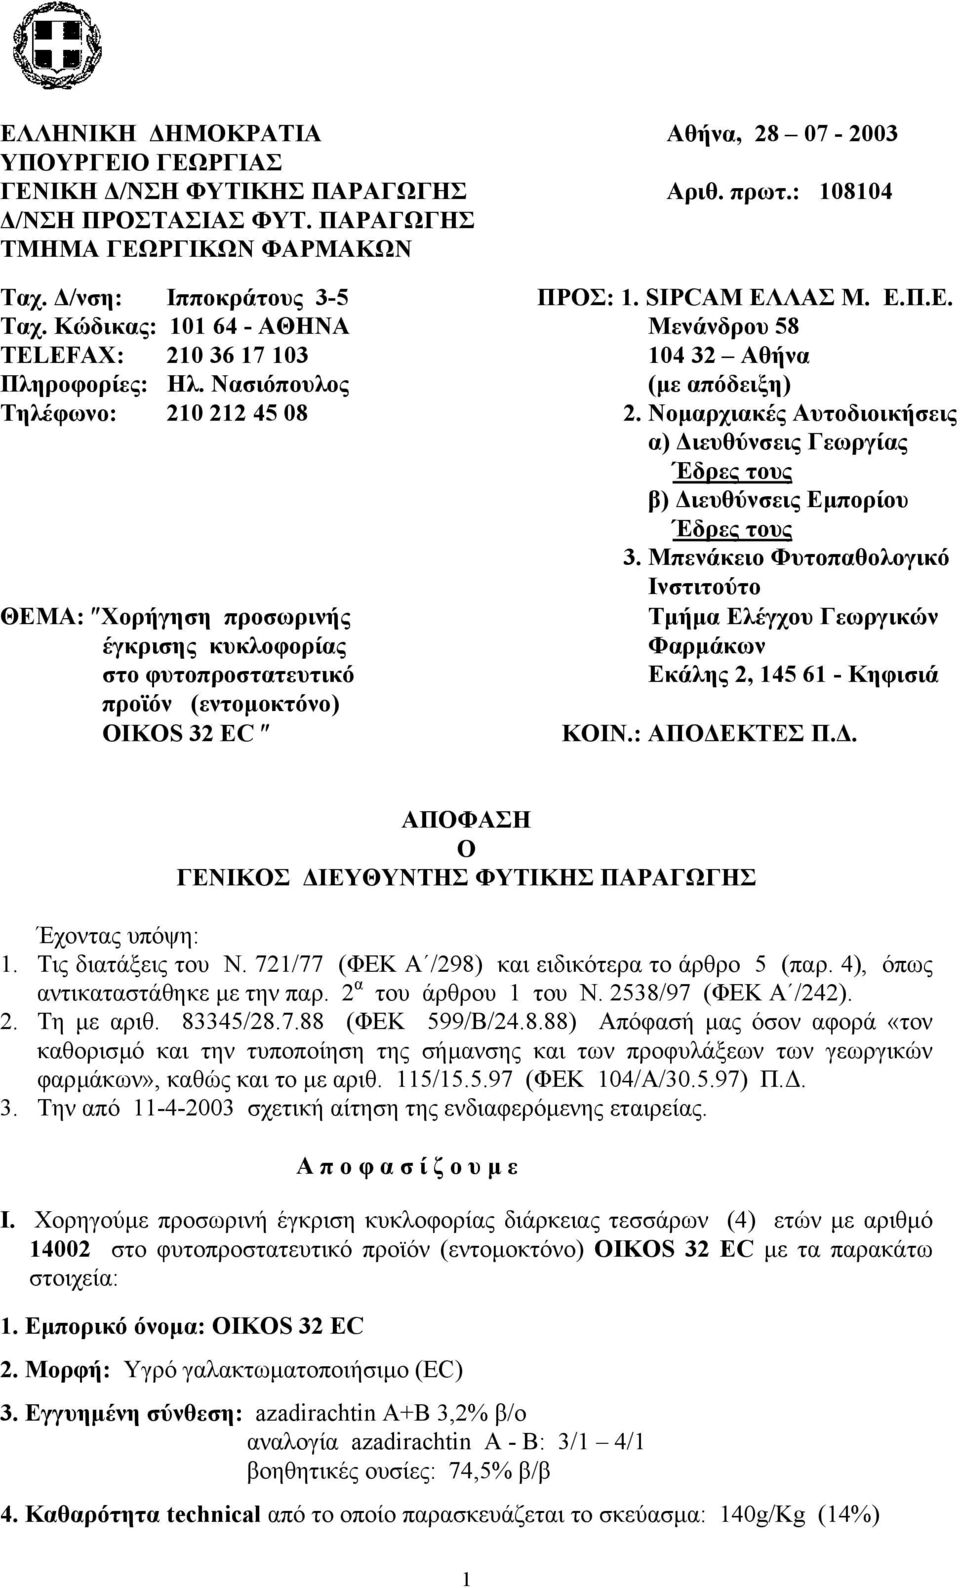 Νοµαρχιακές Αυτοδιοικήσεις α) ιευθύνσεις Γεωργίας Έδρες τους β) ιευθύνσεις Εµπορίου Έδρες τους 3.